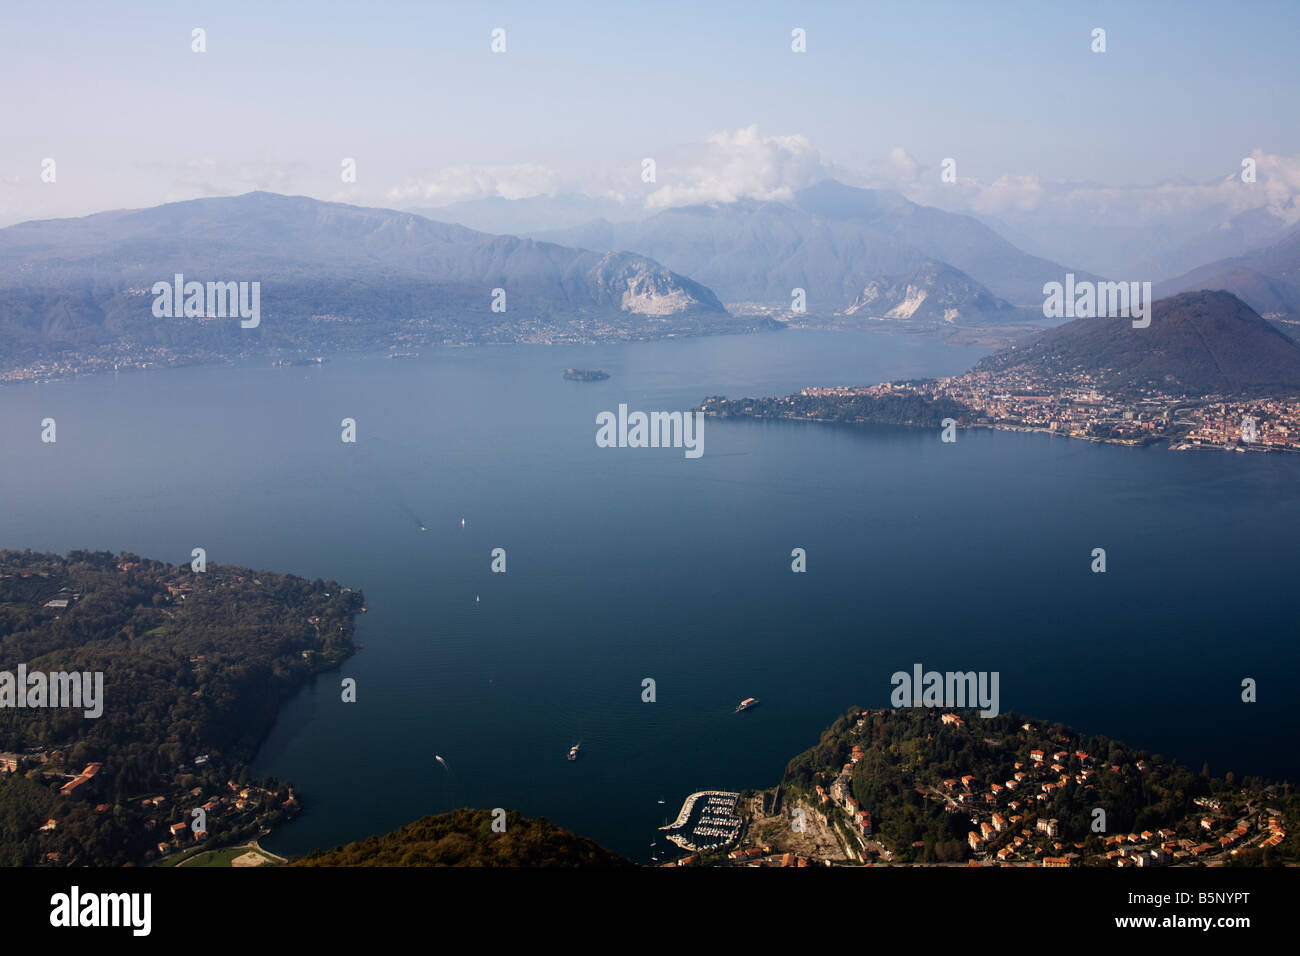 Schöner Aussicht auf den Lago Maggiore und die Alpen von oben des Sasso del Ferro mount erreichbar mit der Standseilbahn von Laveno, Varese, Italien Stockfoto